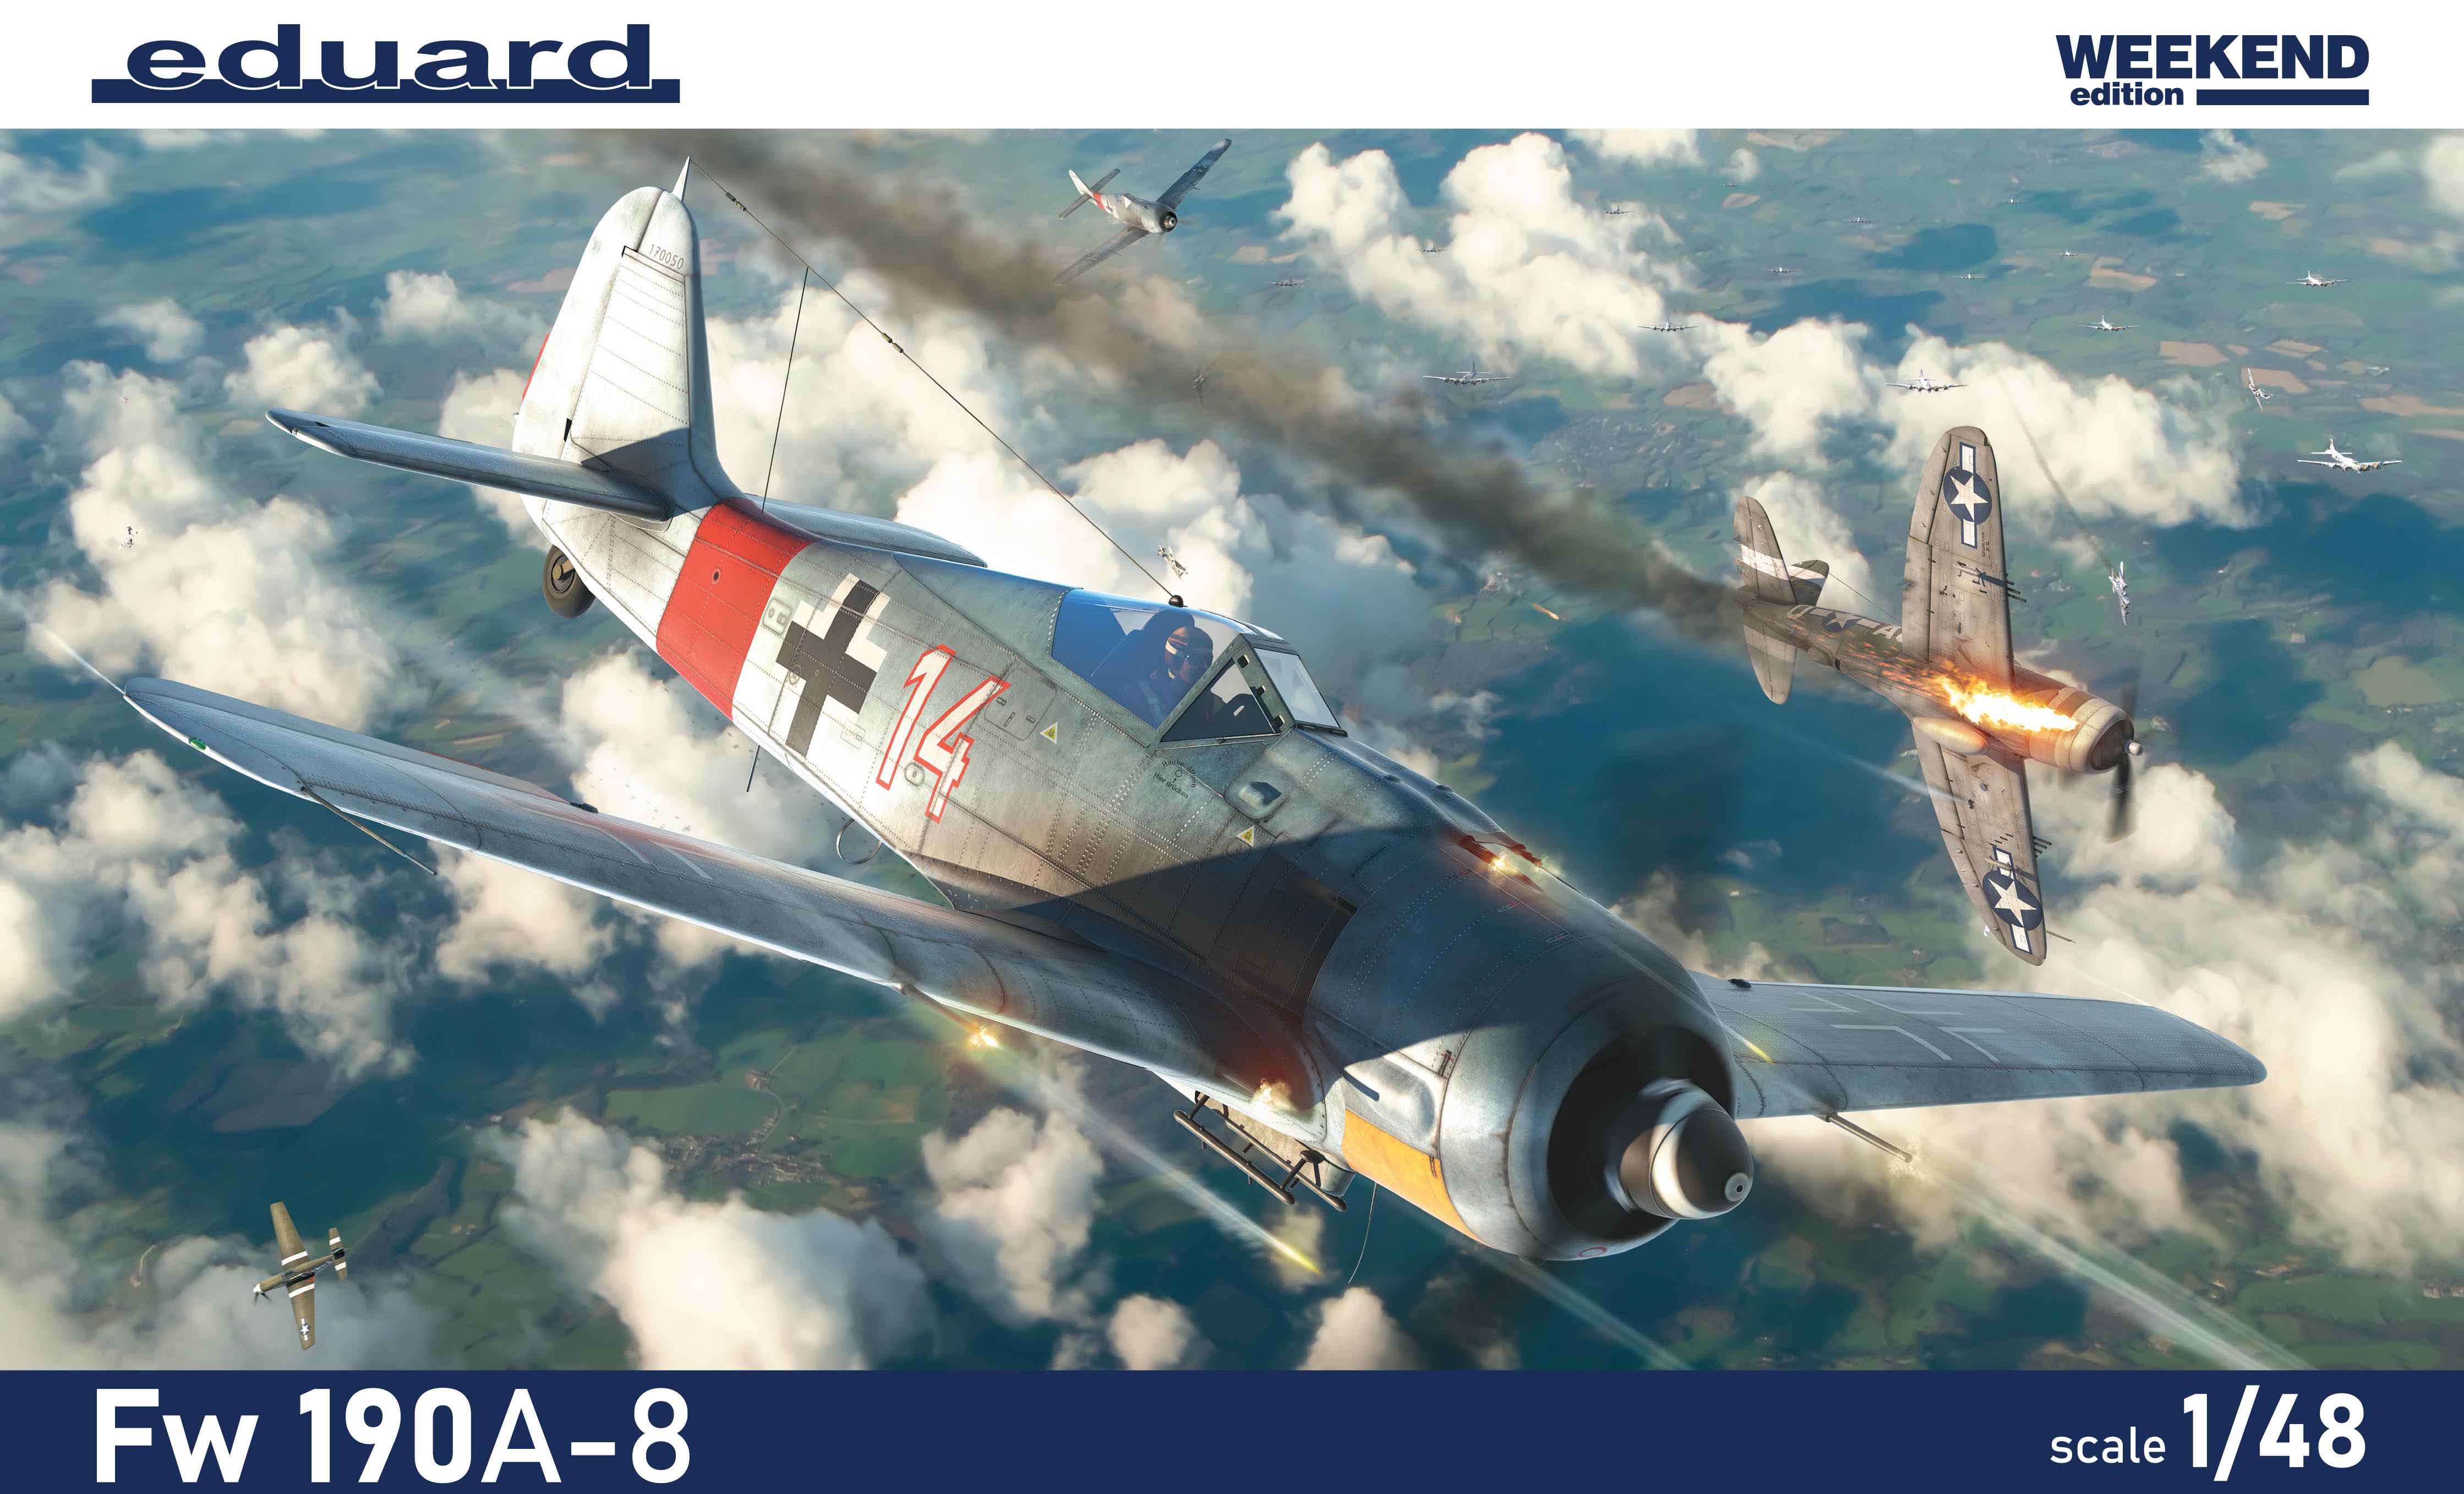 Сборная модель 1/48 Focke-Wulf Fw-190A-8 Weekend edition (Eduard kits)